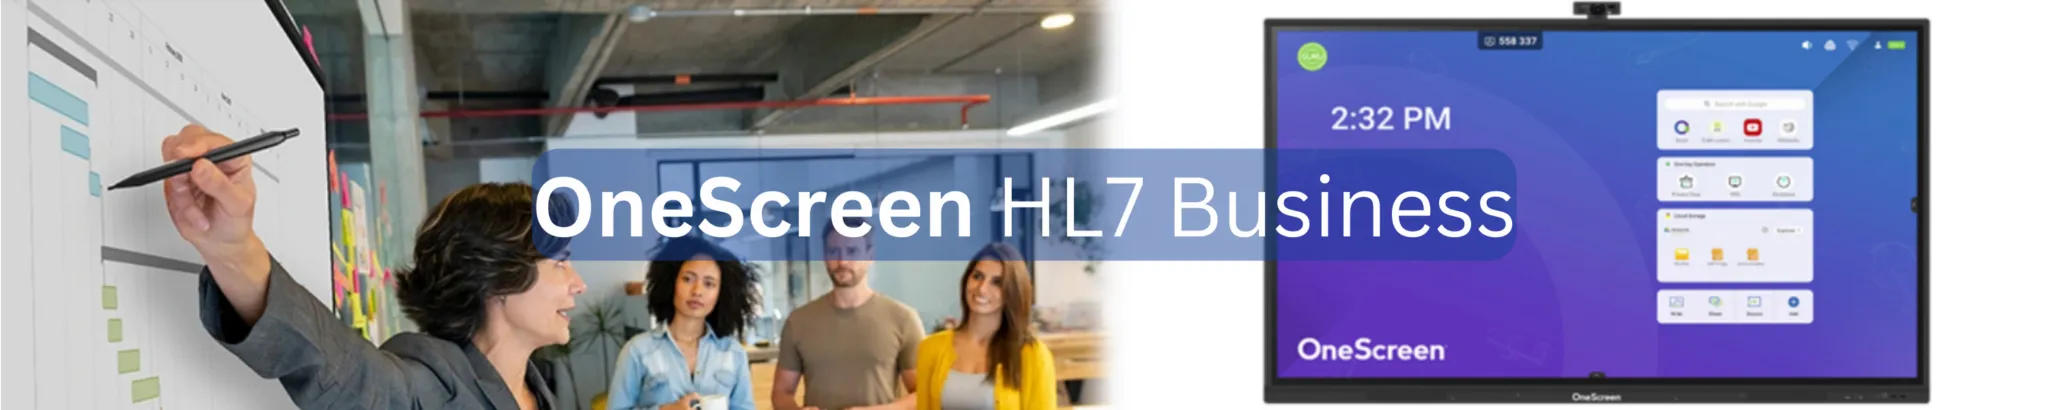 OneScreen-HL7-Business-Banner-2048x410